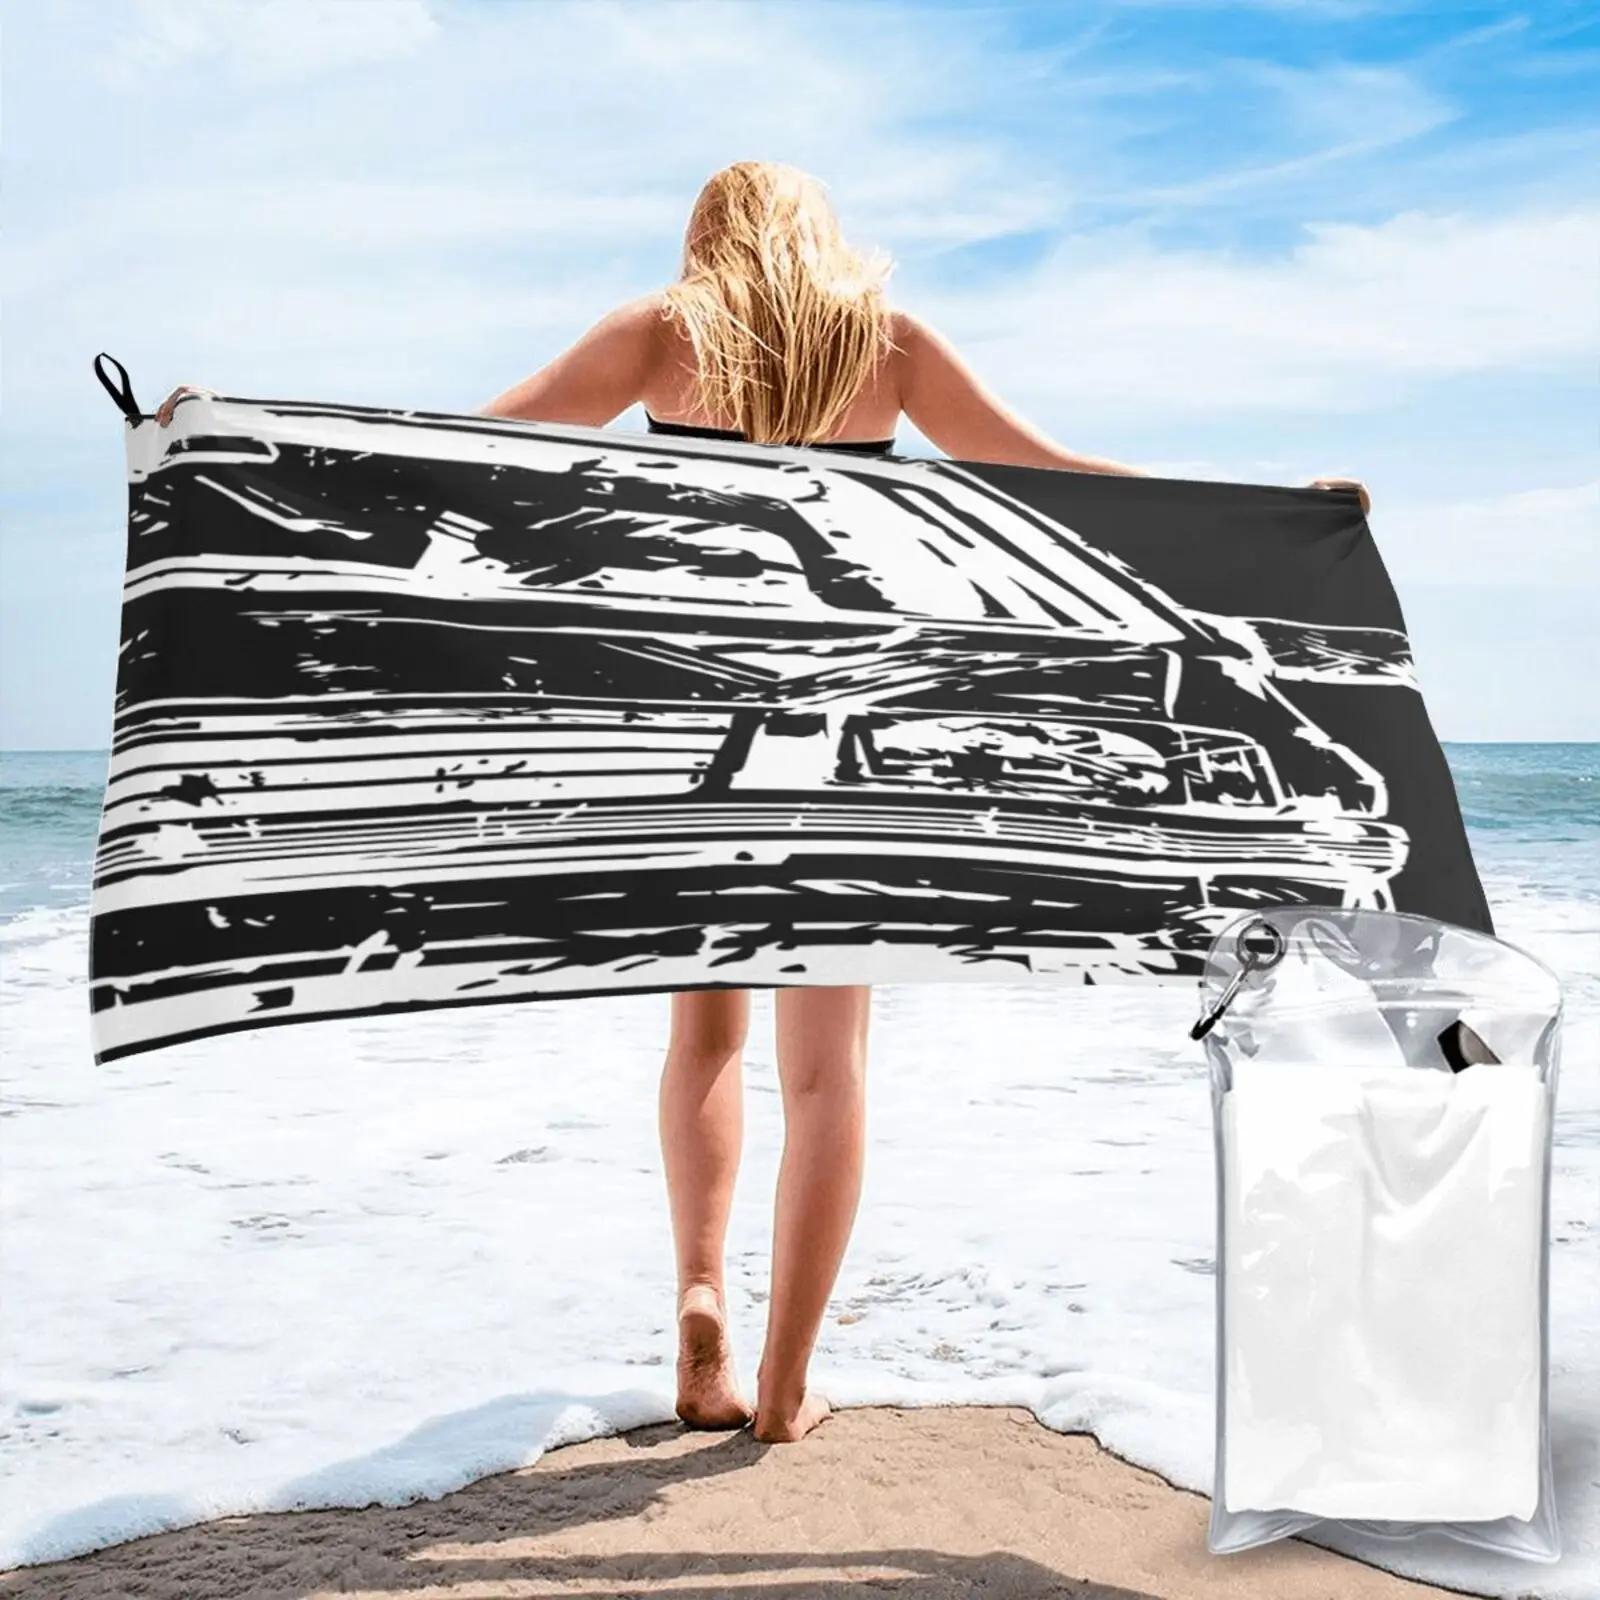 

Пляжное полотенце Opel Corsa A 3892, Большое пляжное полотенце s для пляжа, Пляжная накидка, комплект мебели для ванной комнаты, морское пляжное пол...